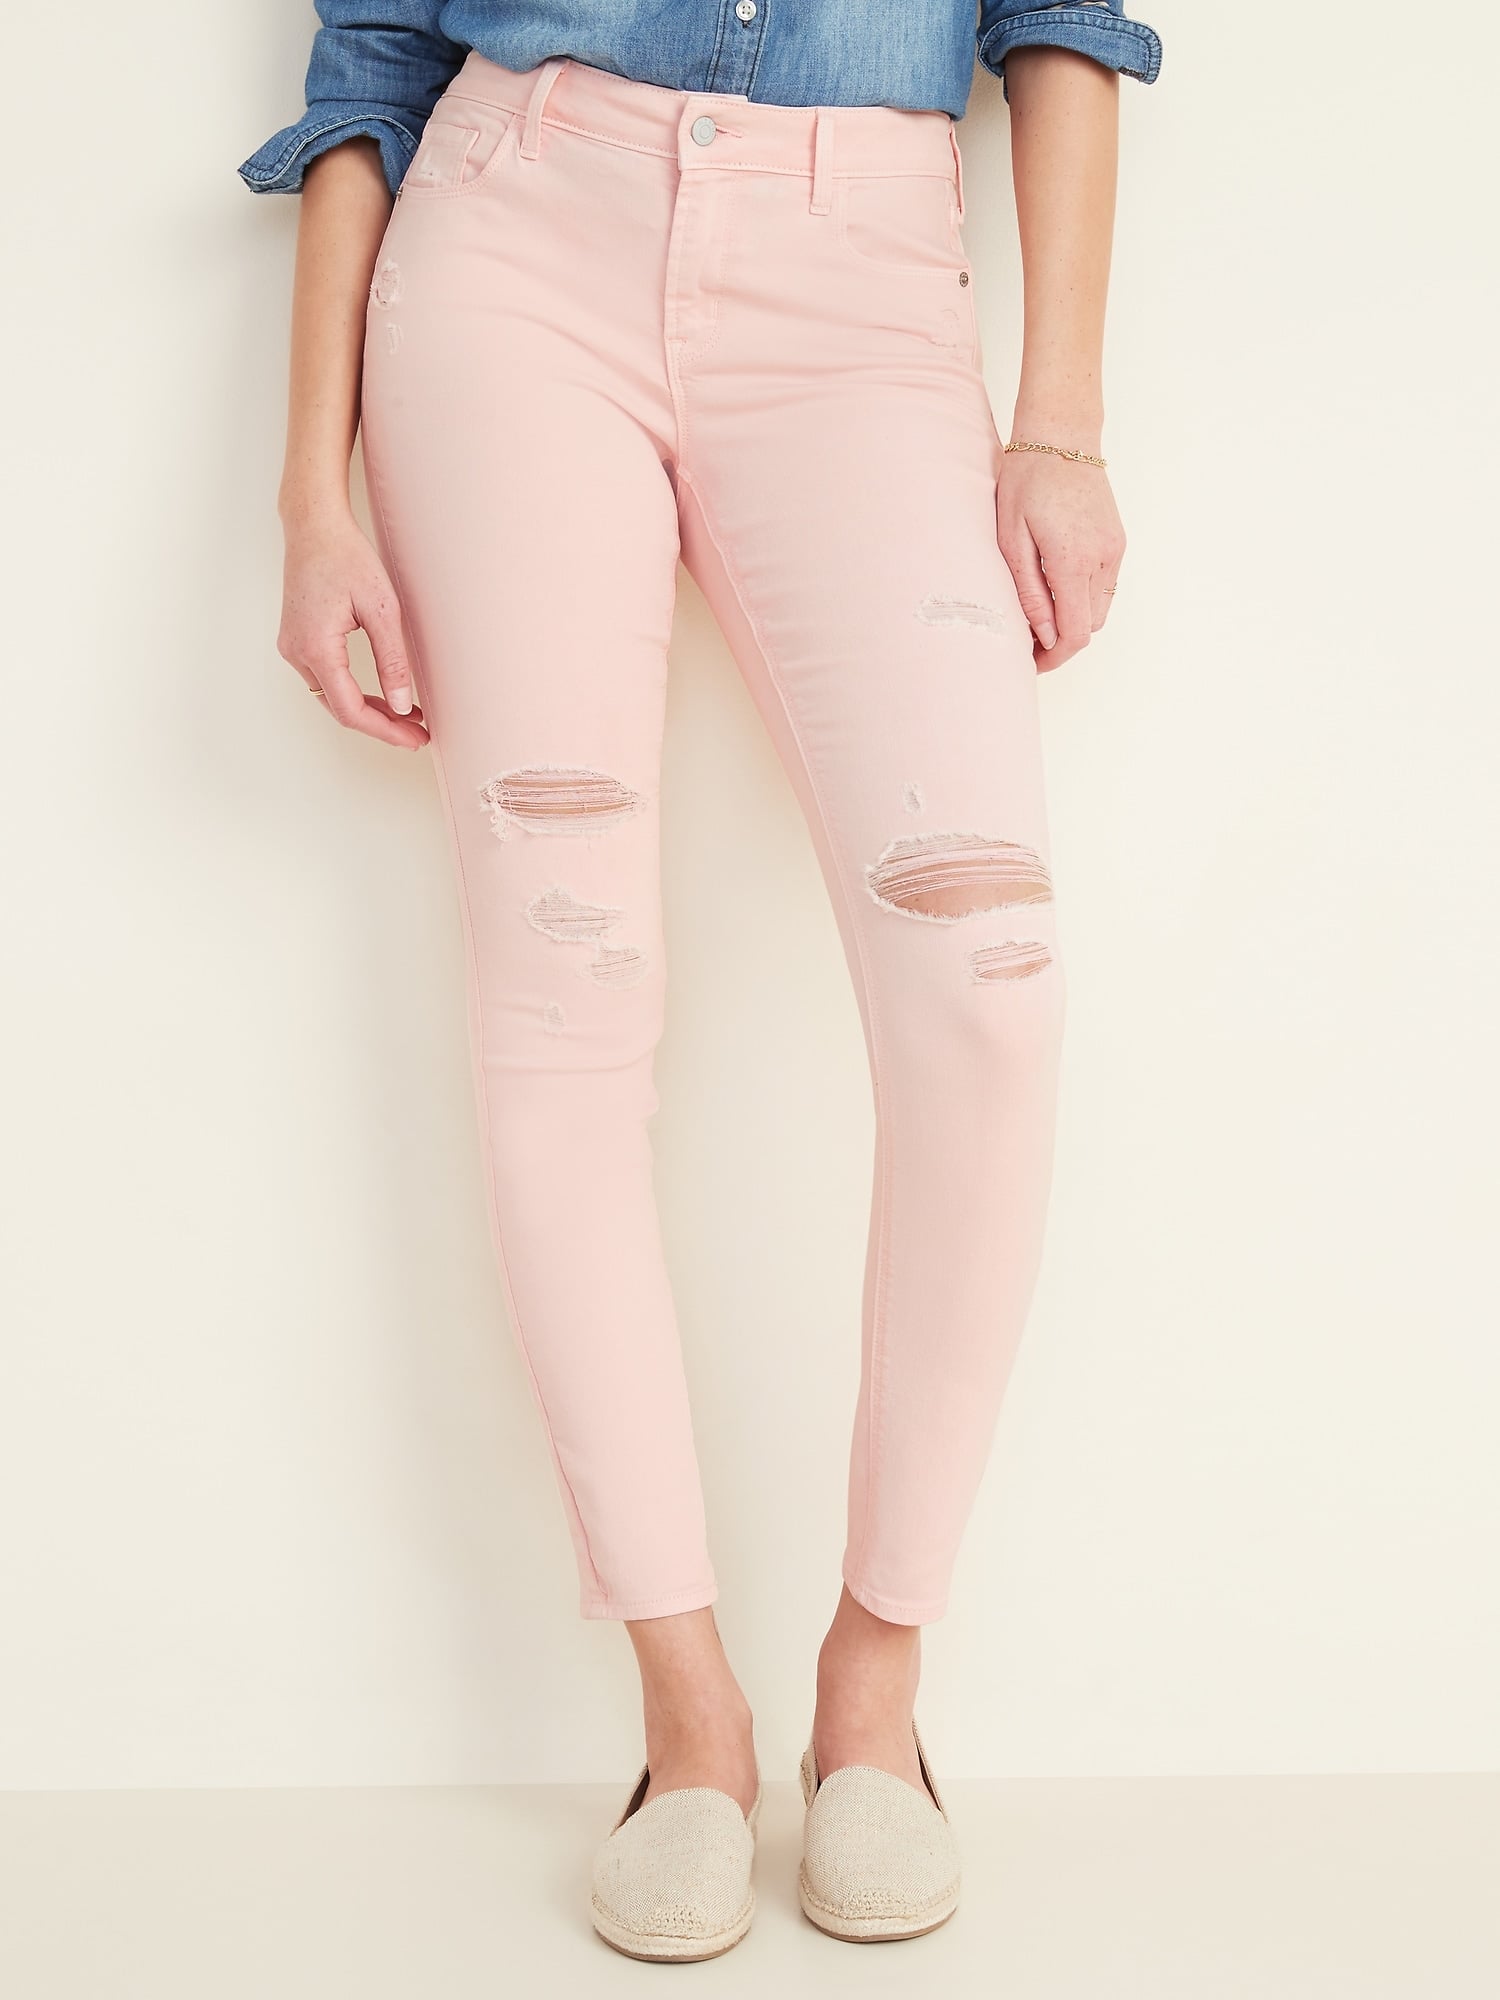 peach colour jeans